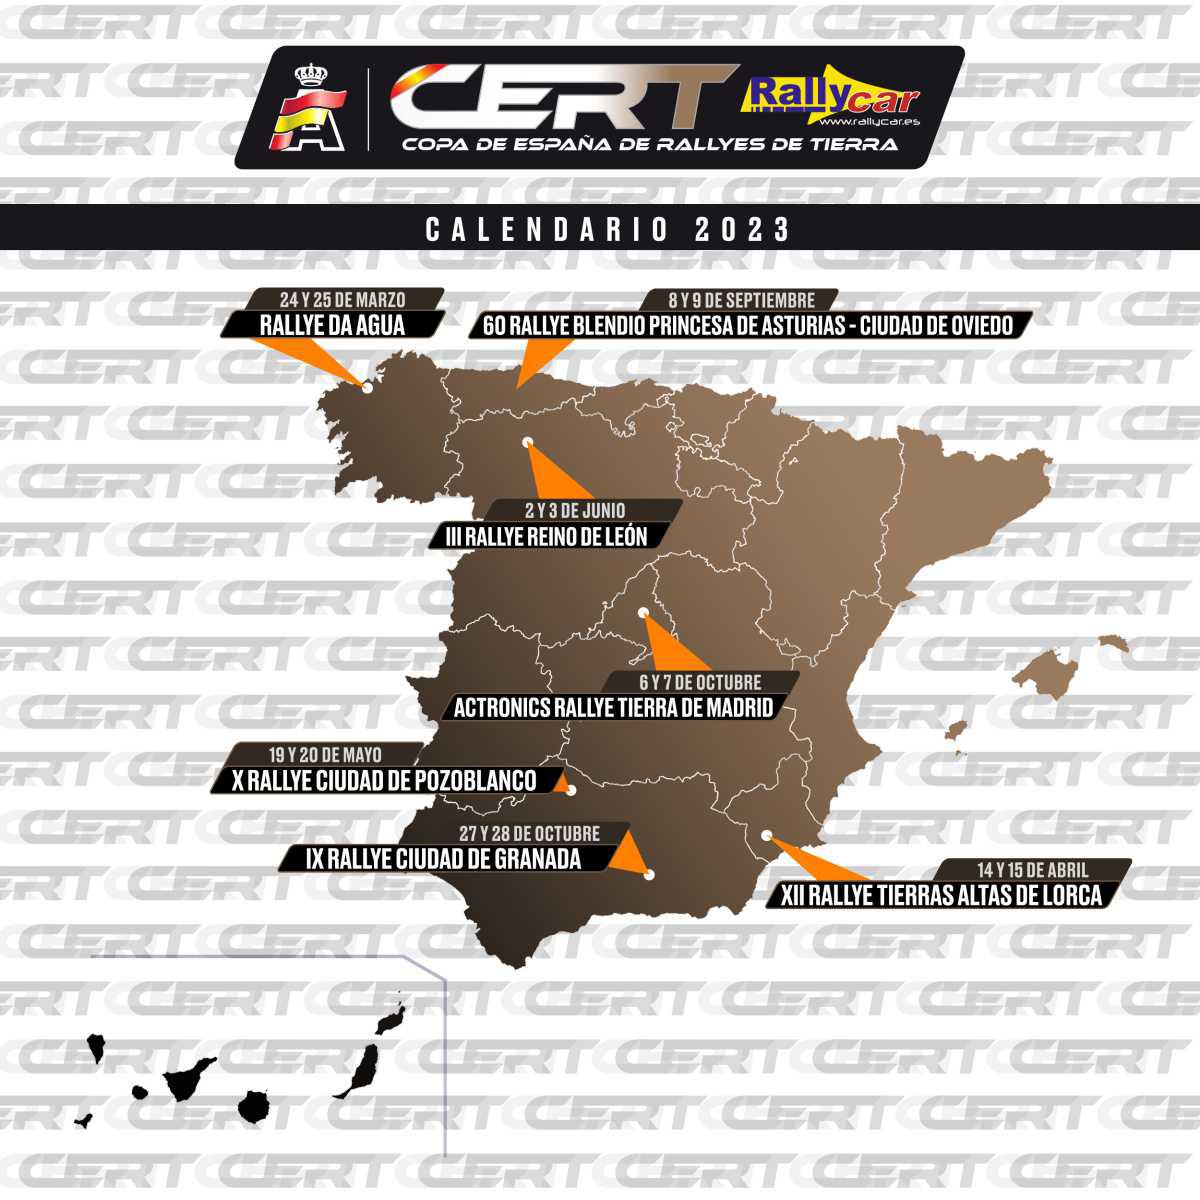 La CERT - Rallycar, con un calendario de 7 rallyes esta temporada